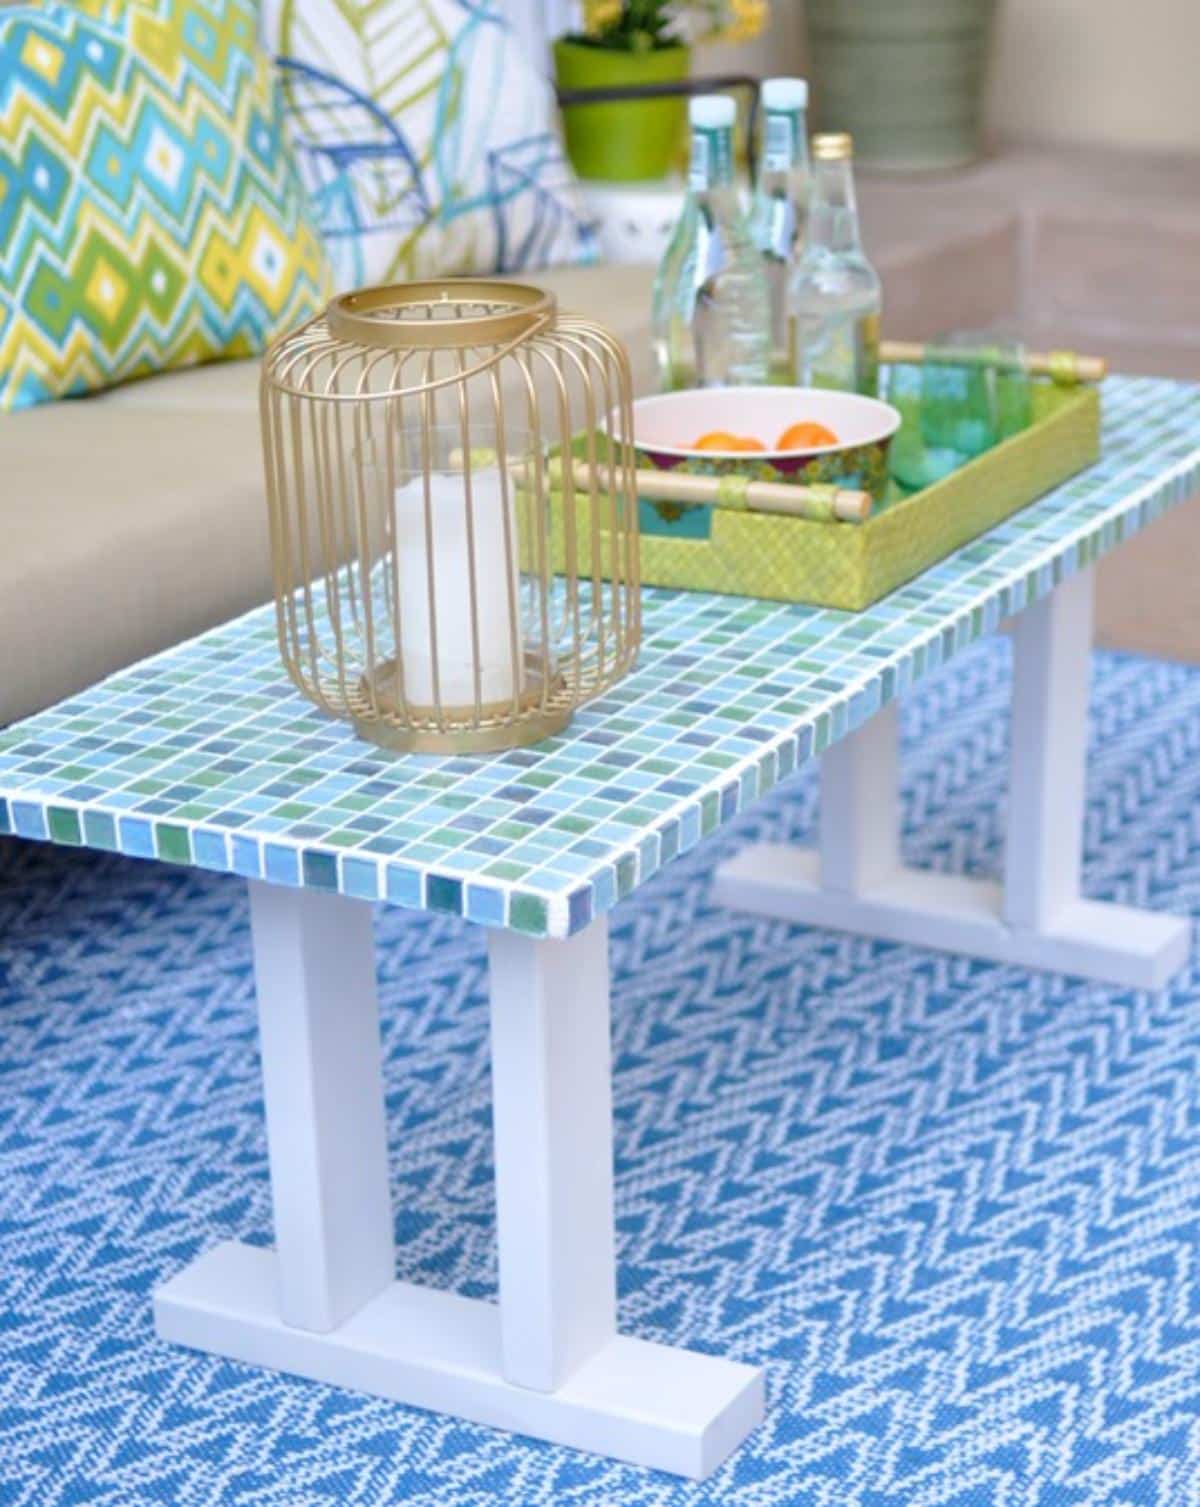 DIY Tile Outdoor Table